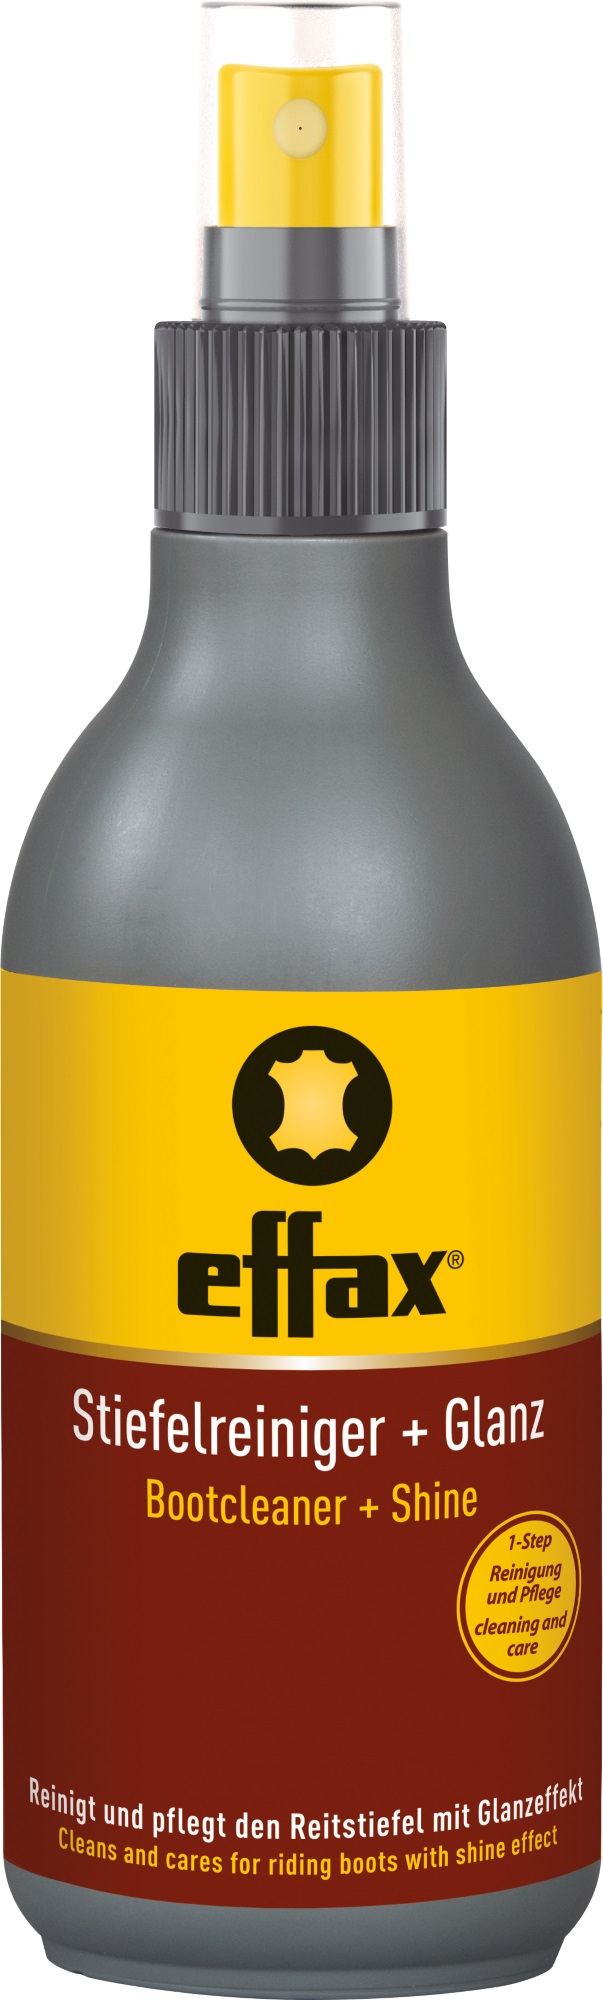 Effax Stiefelreiniger + Glanz für Reitstiefel